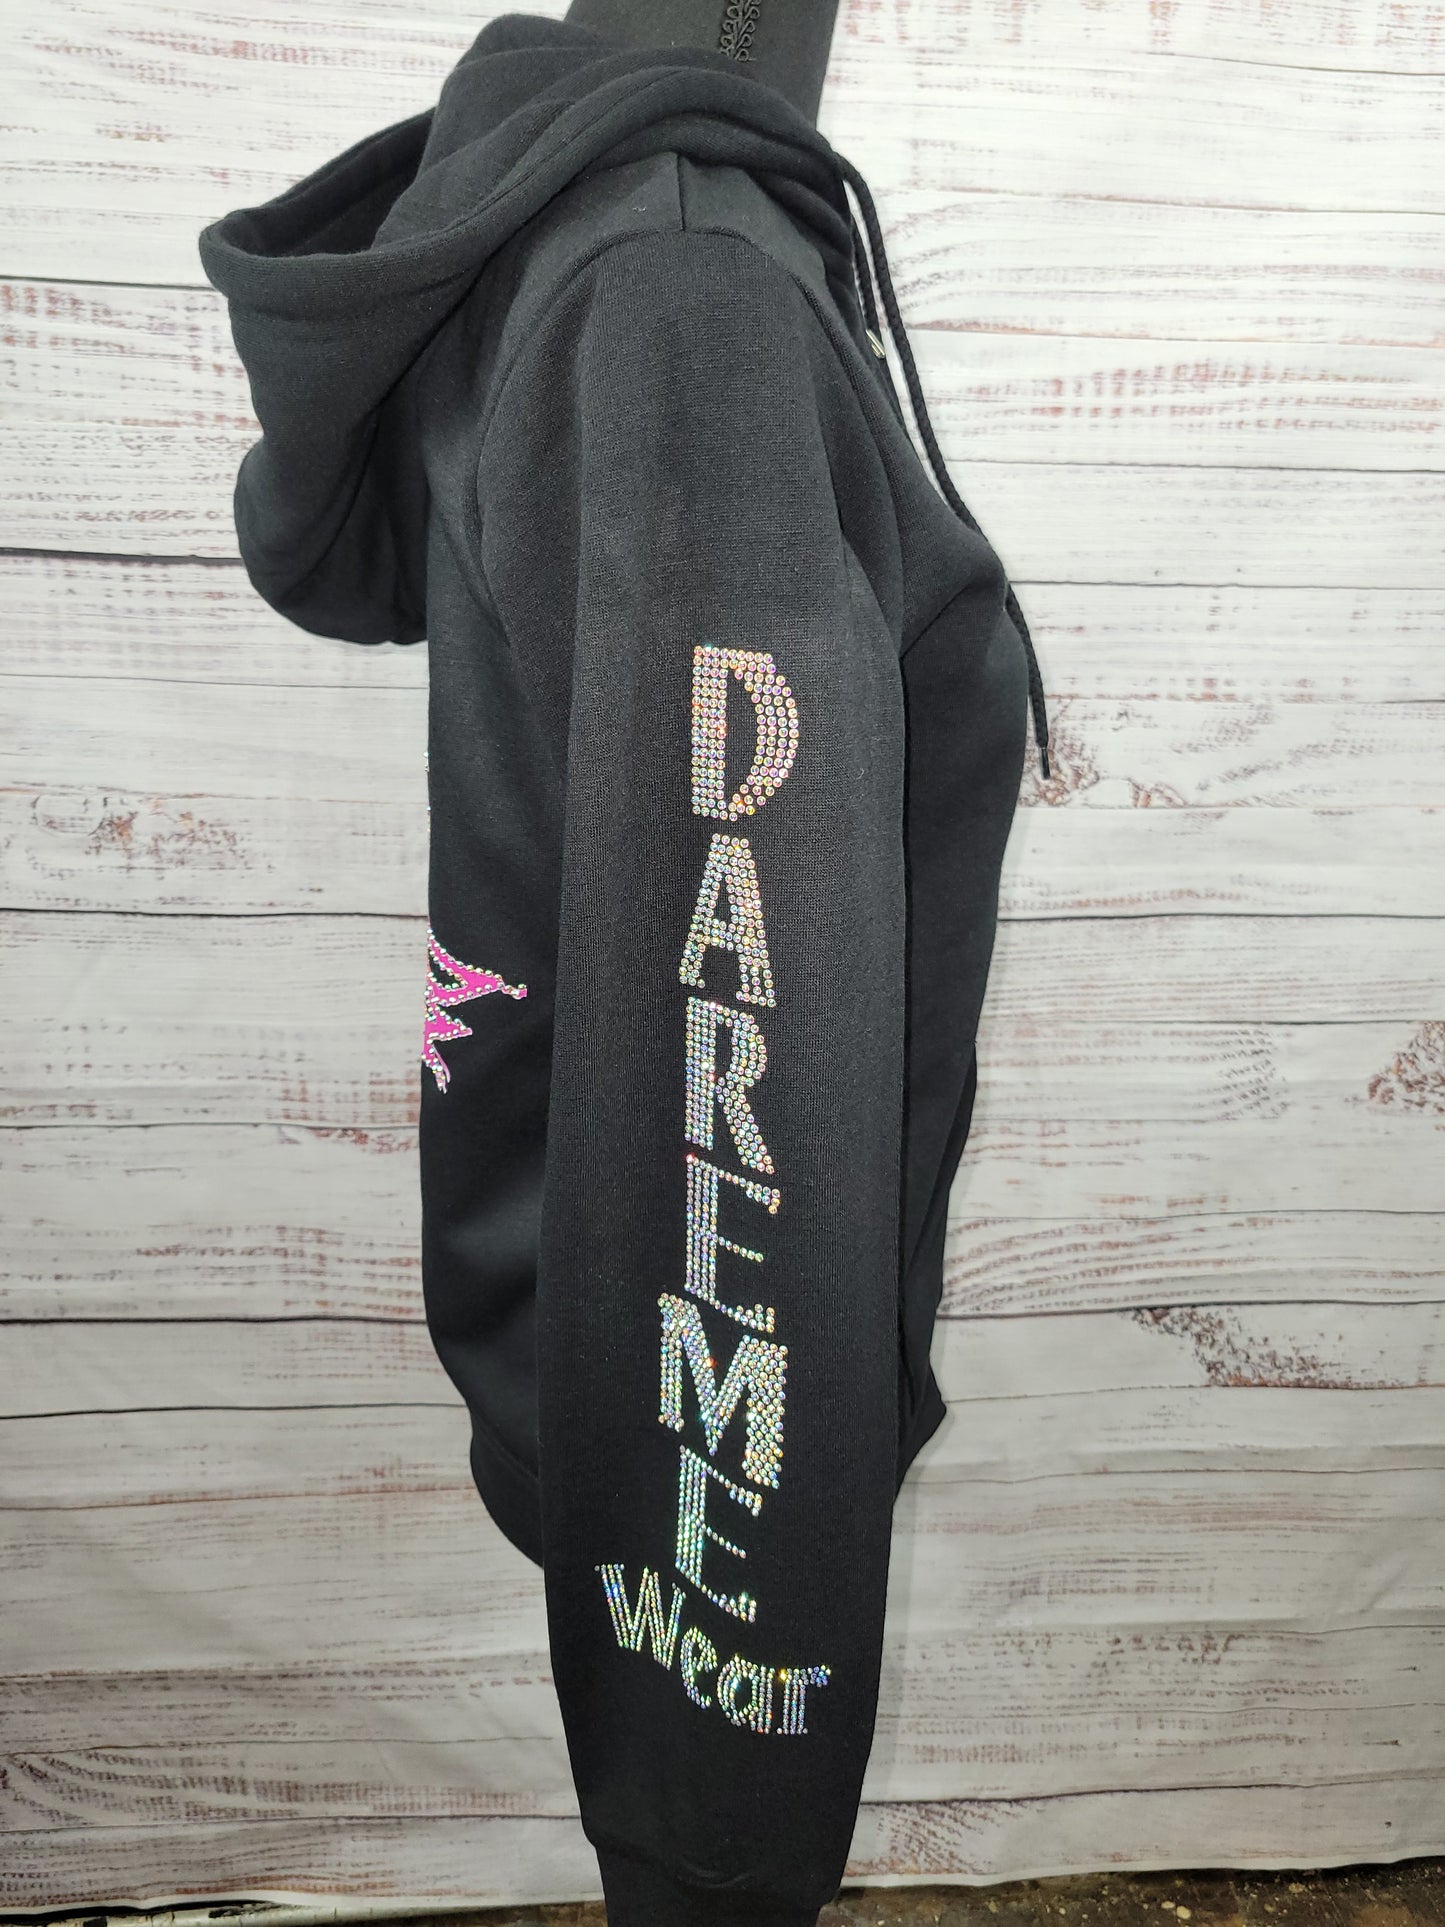 DareMe Wear branded hoodie